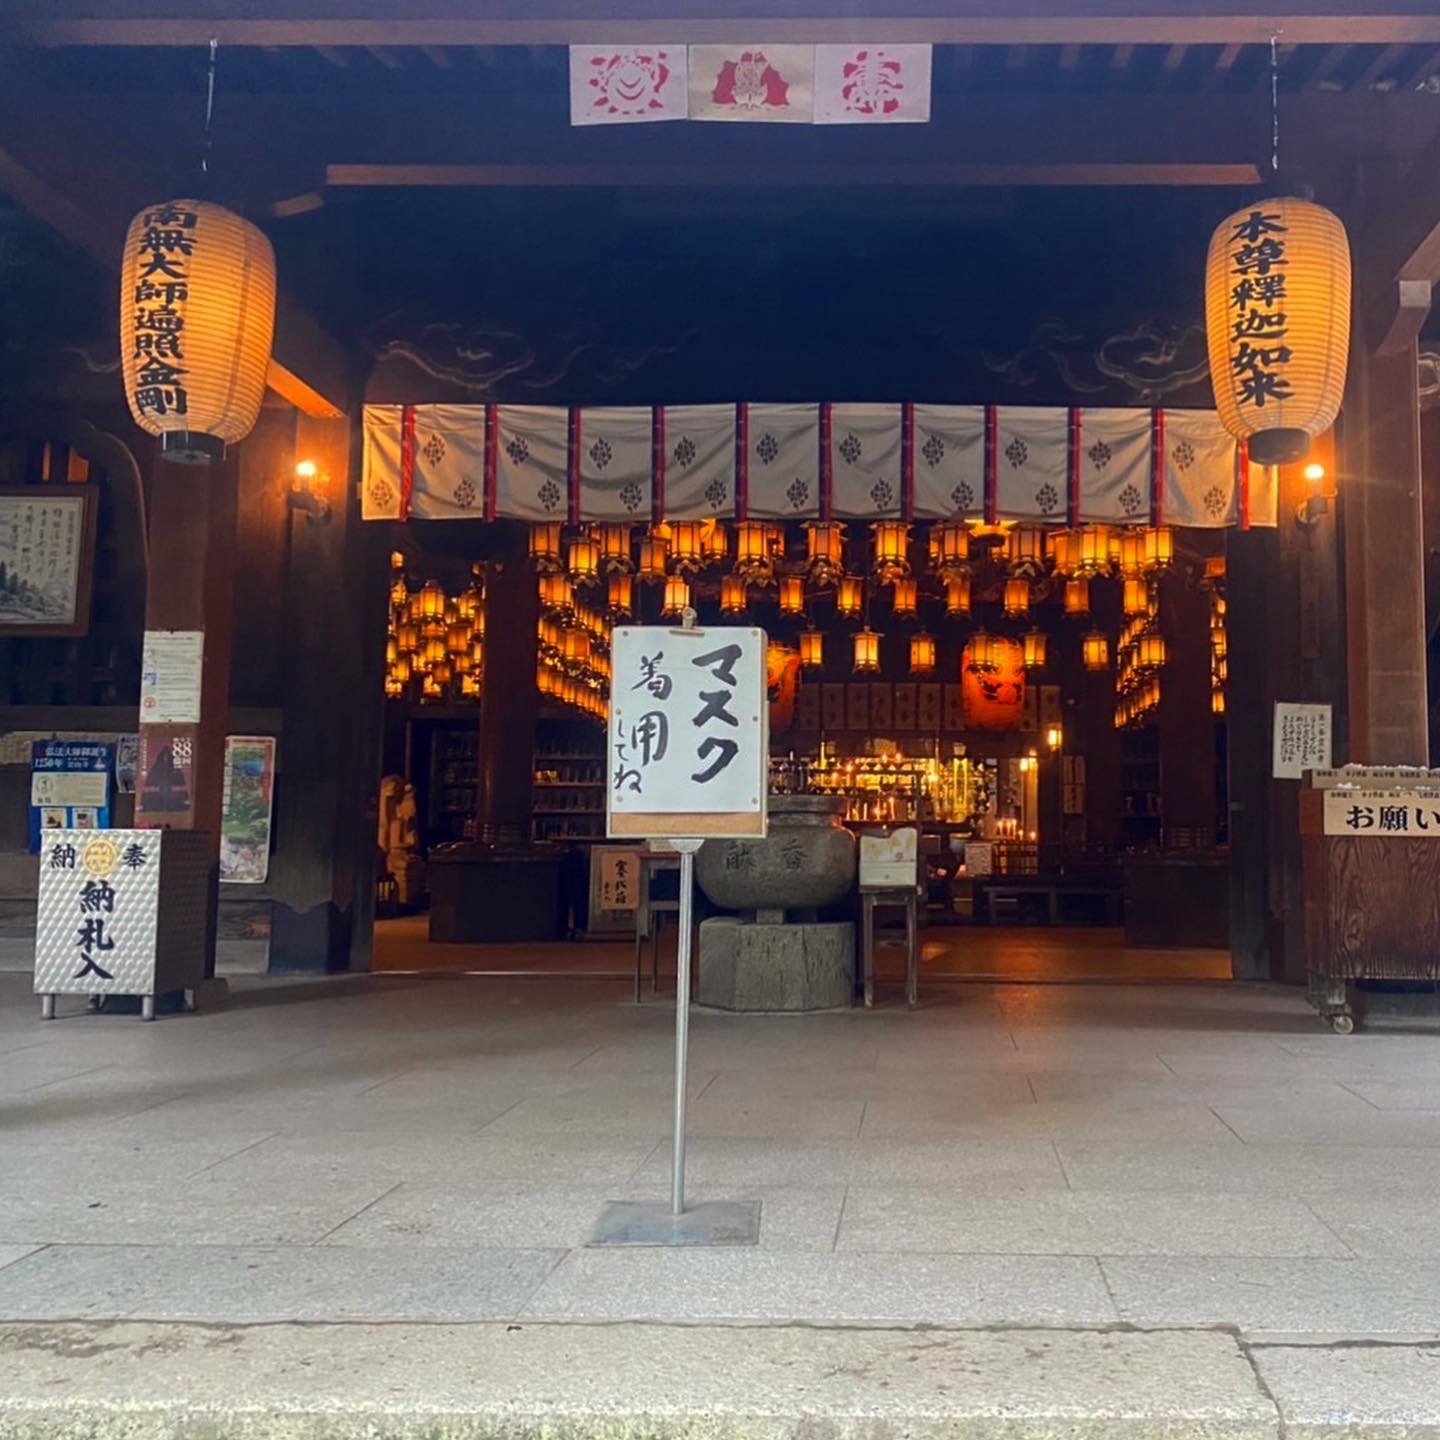 日本四国圣地巡礼起点—灵山寺